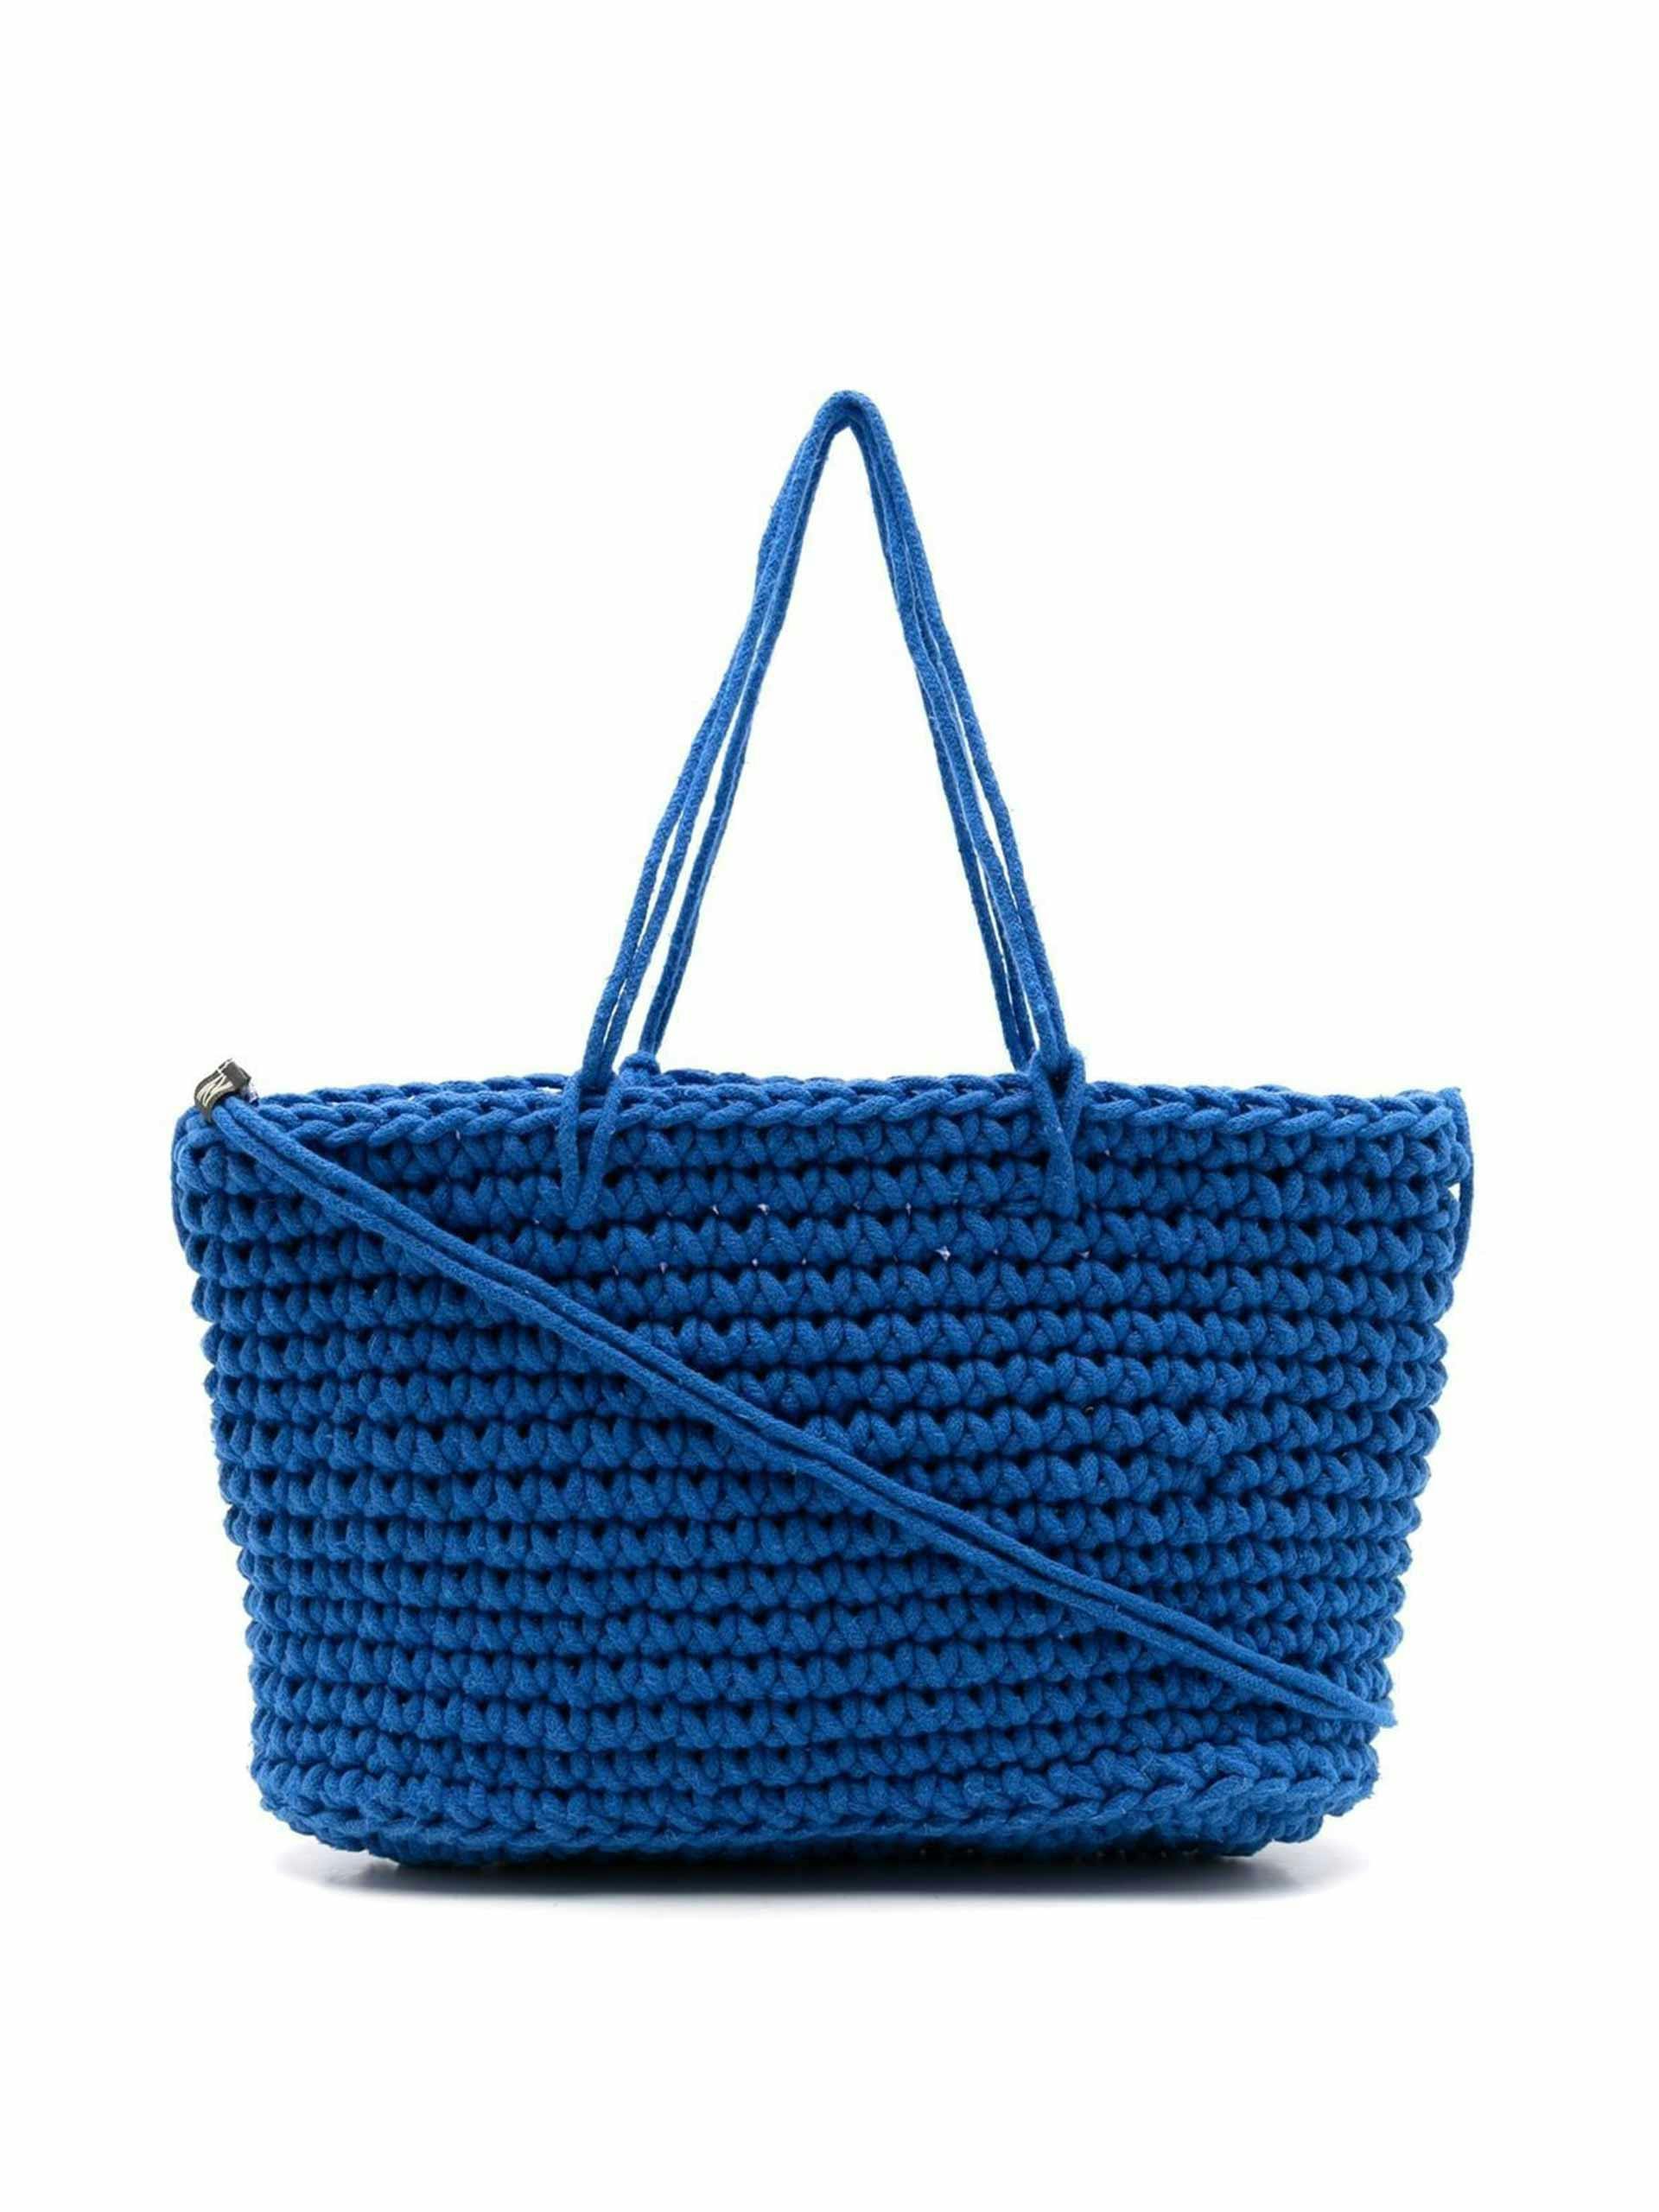 Blue crochet bag